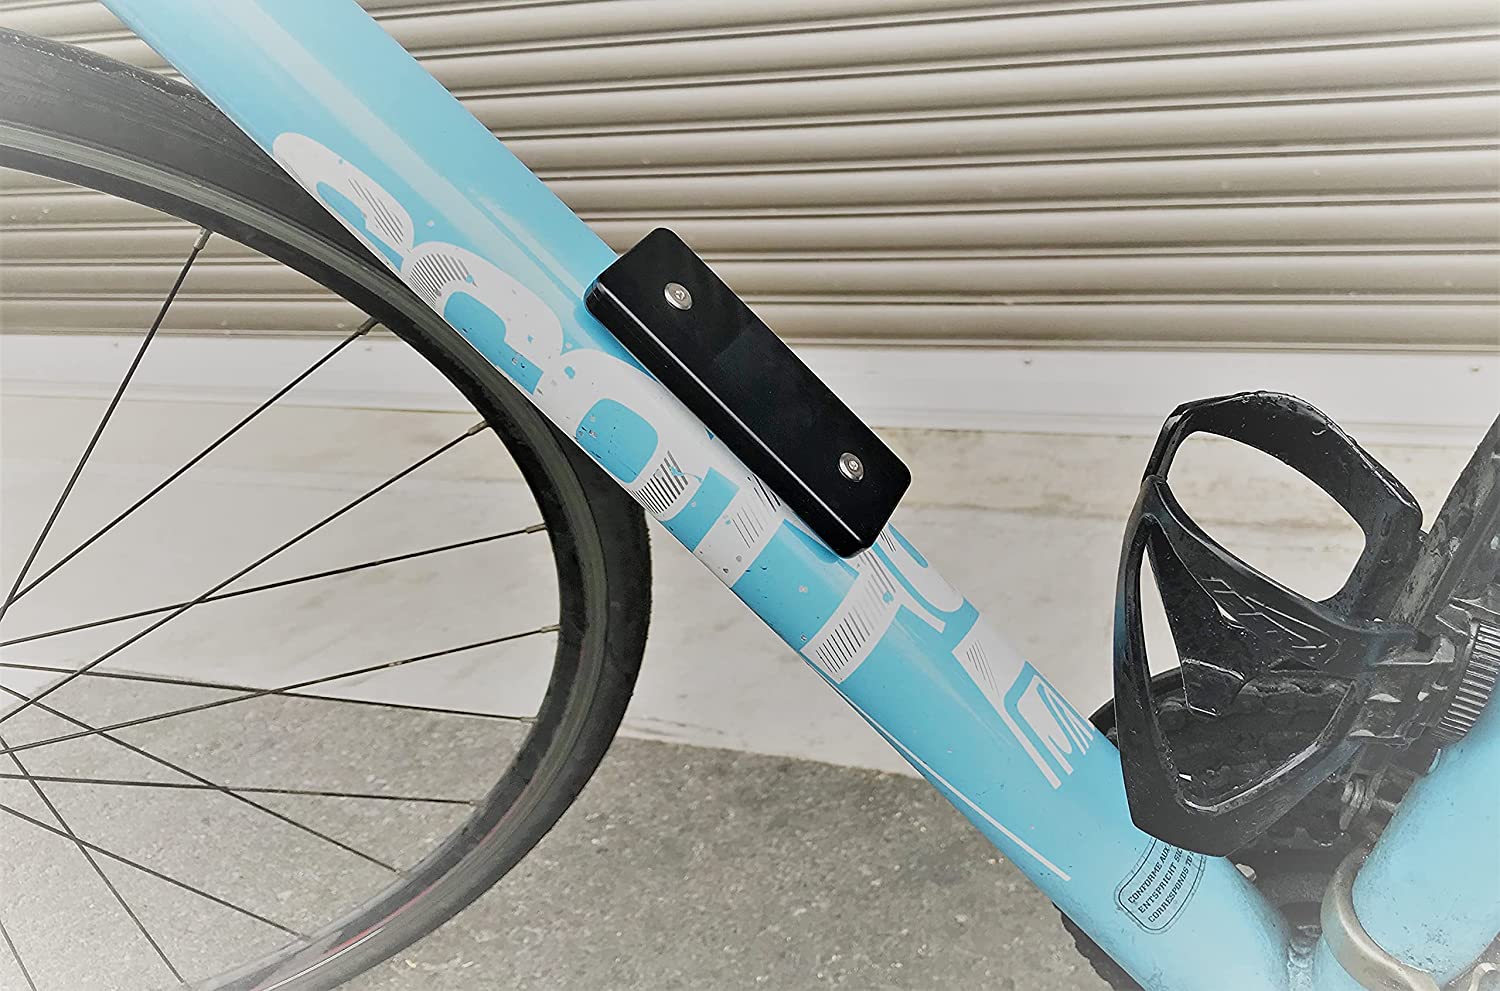 新品Apple Air Tag自転車取付け用ケースキット ドリンクホルダー等に 特殊ボルト/レンチ付属 特価品 